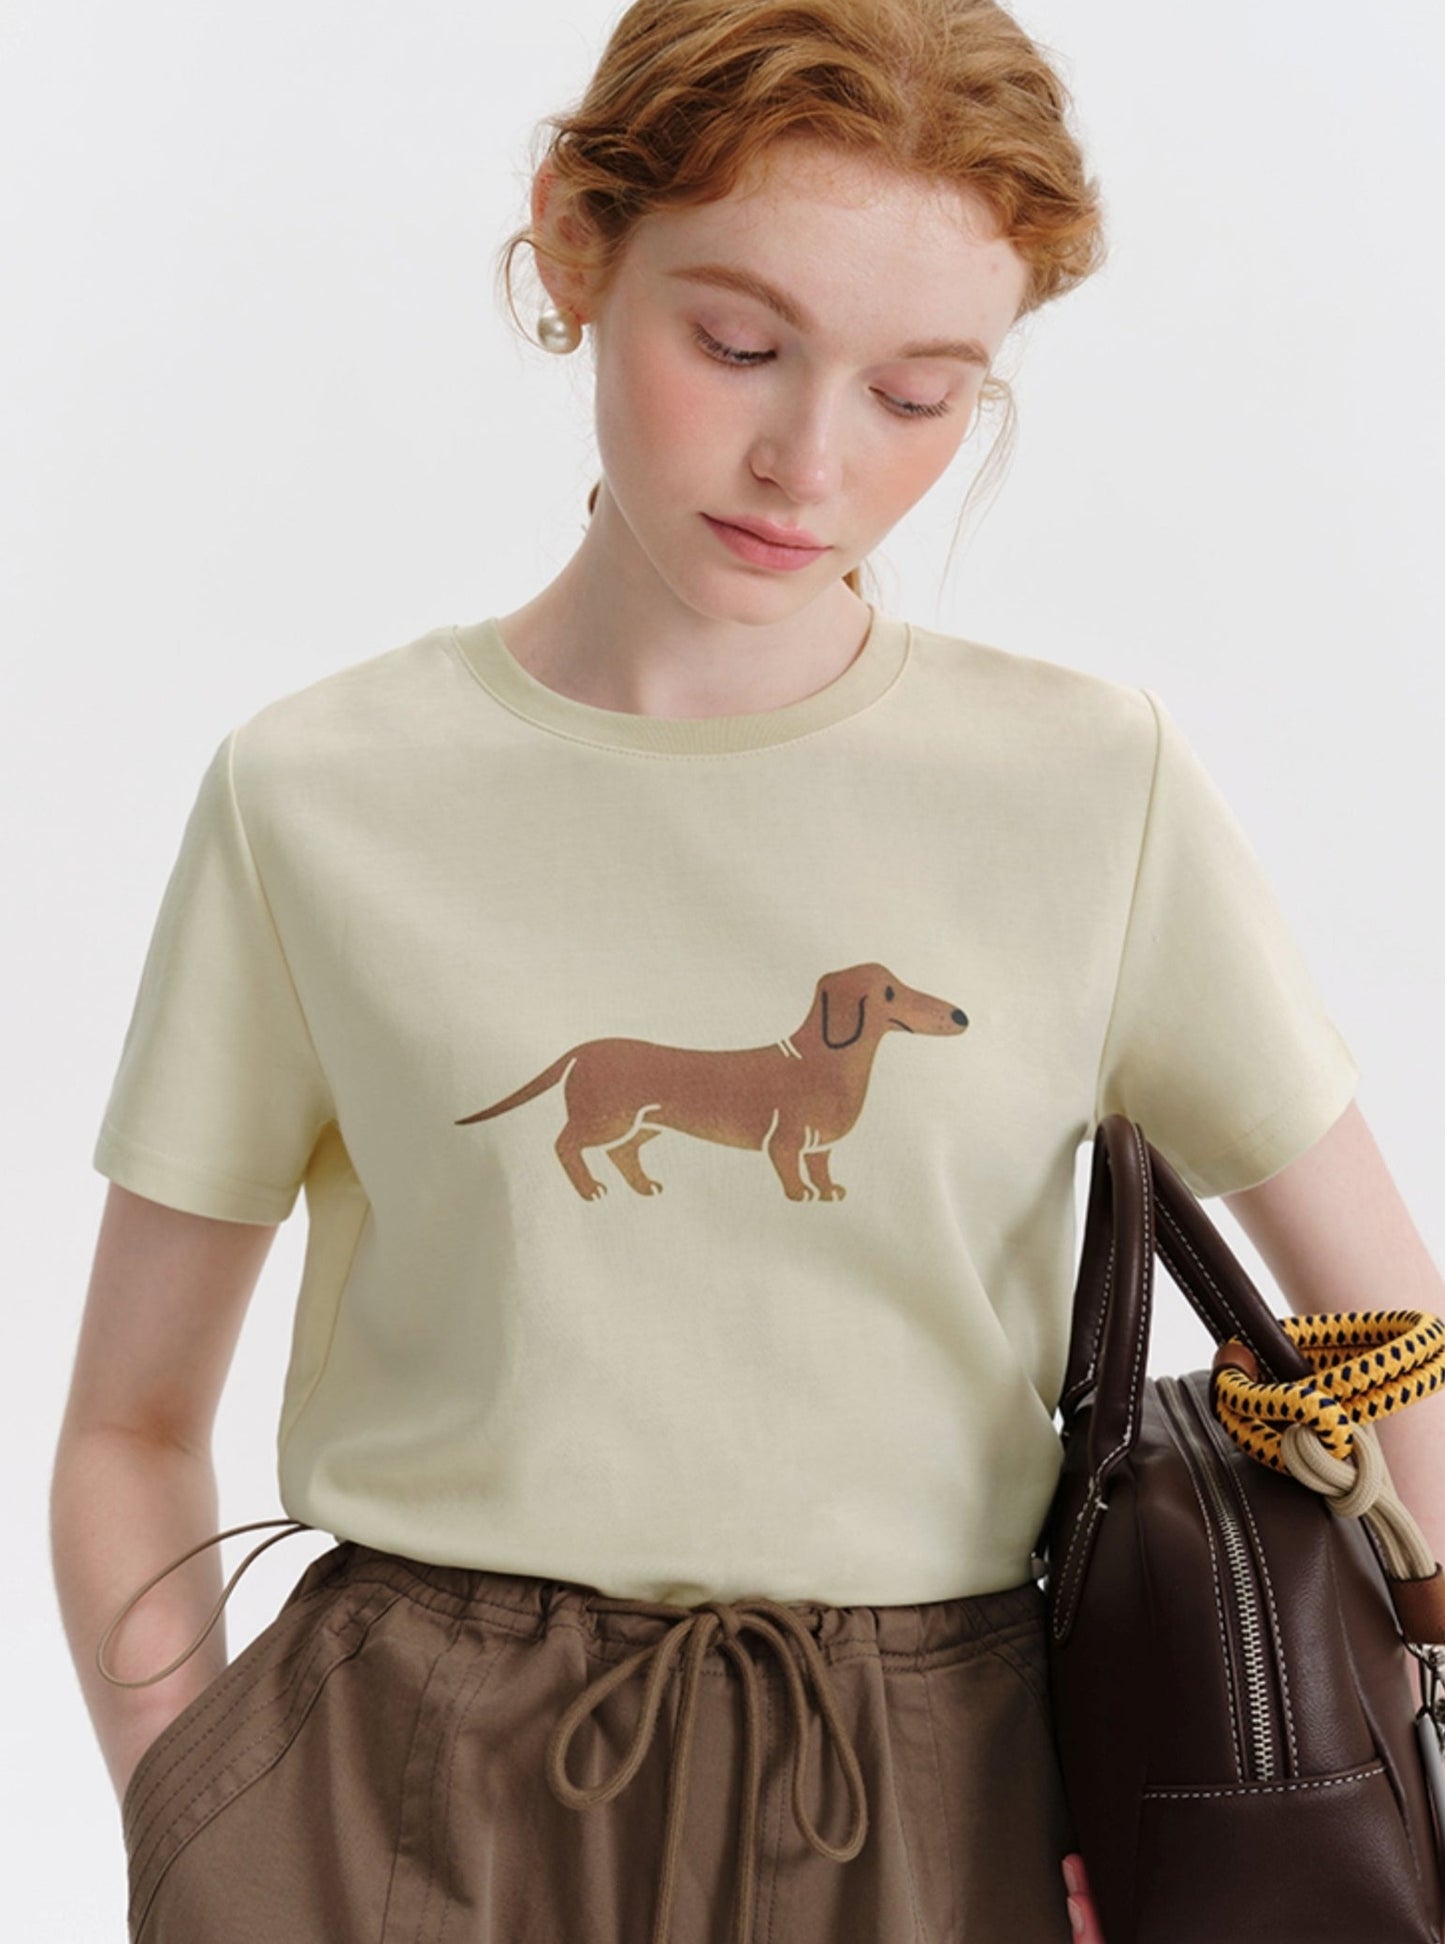 Dachshund Dog Print T-Shirt